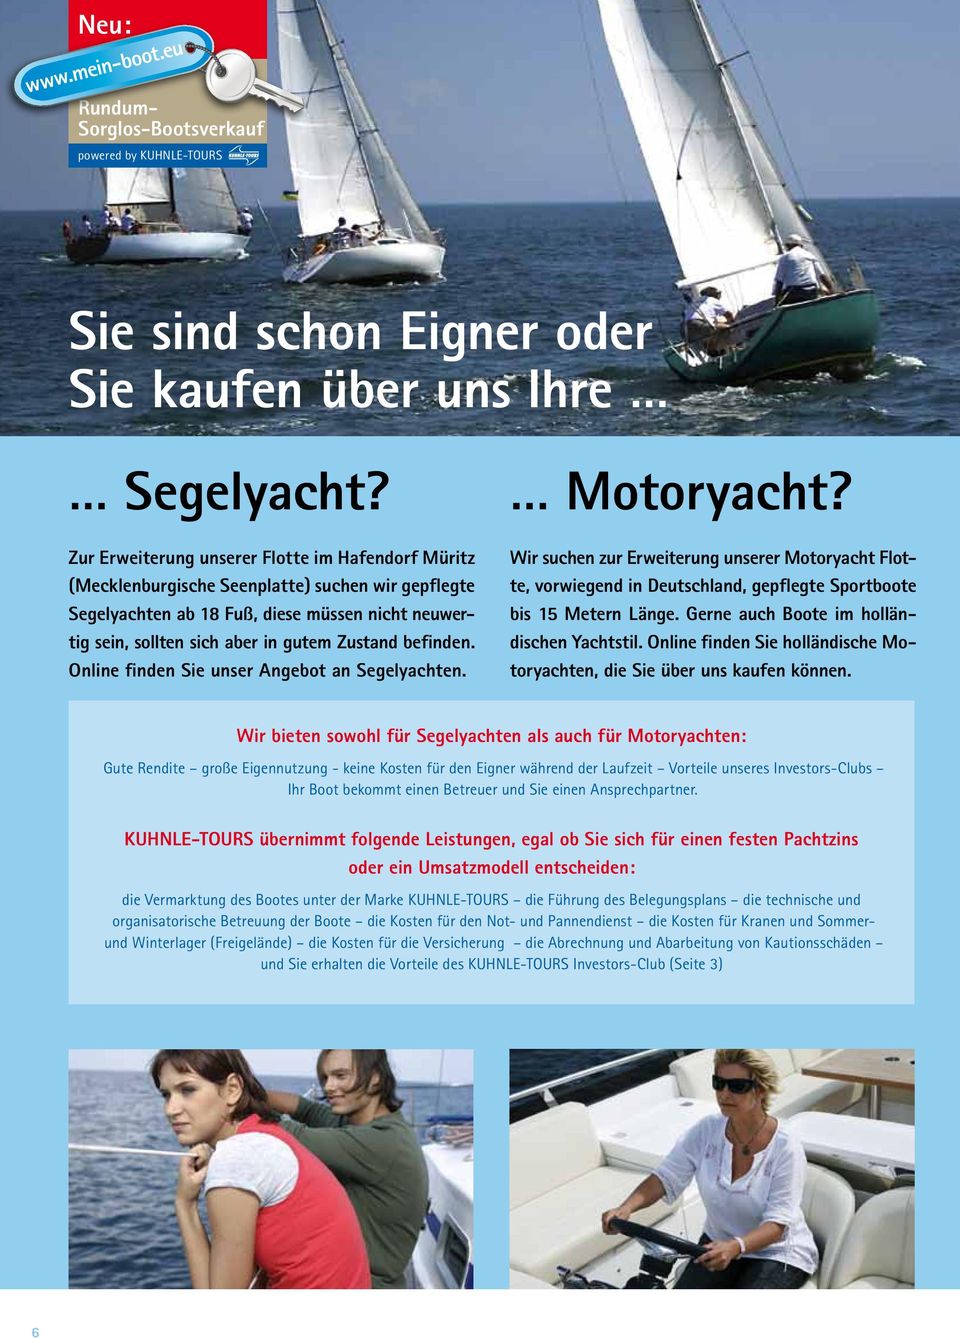 befinden. Online finden Sie unser Angebot an Segelyachten. Motoryacht? Wir suchen zur Erweiterung unserer Motoryacht Flotte, vorwiegend in Deutschland, gepflegte Sportboote bis 15 Metern Länge.